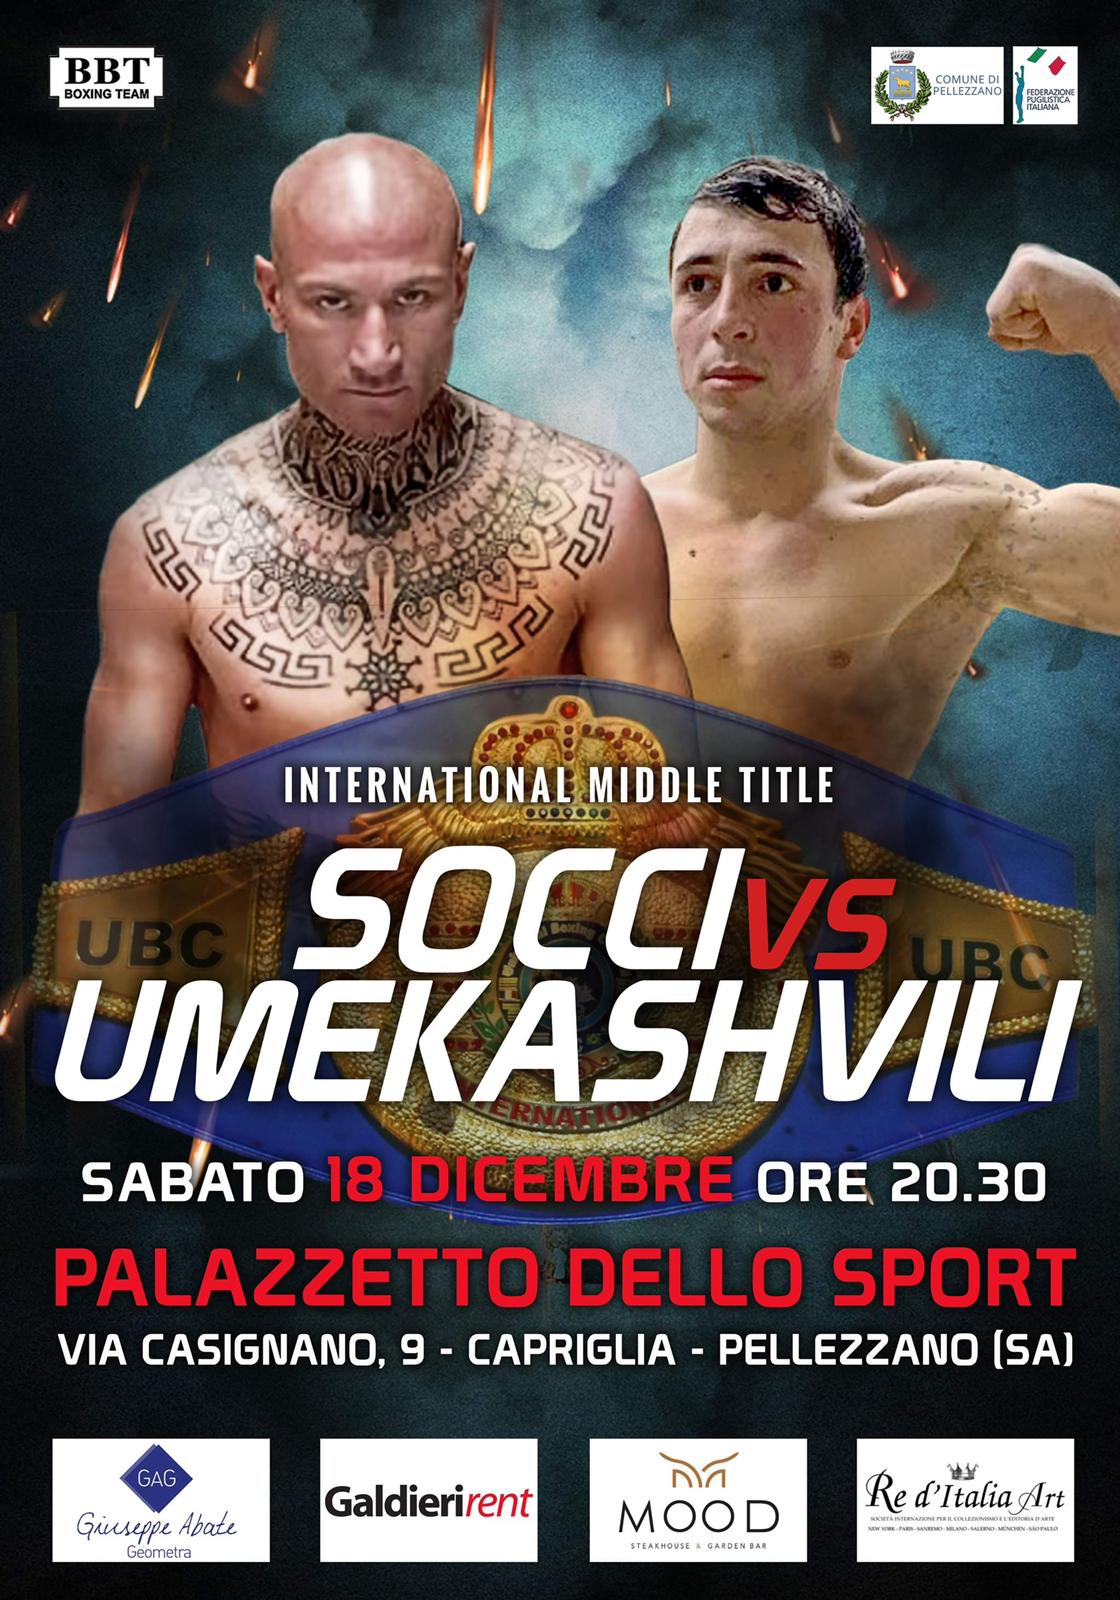 Pellezzano: incontro di boxe Dario Socci – Umekashvili per titolo Mediterrano Ibo – pesi medi 